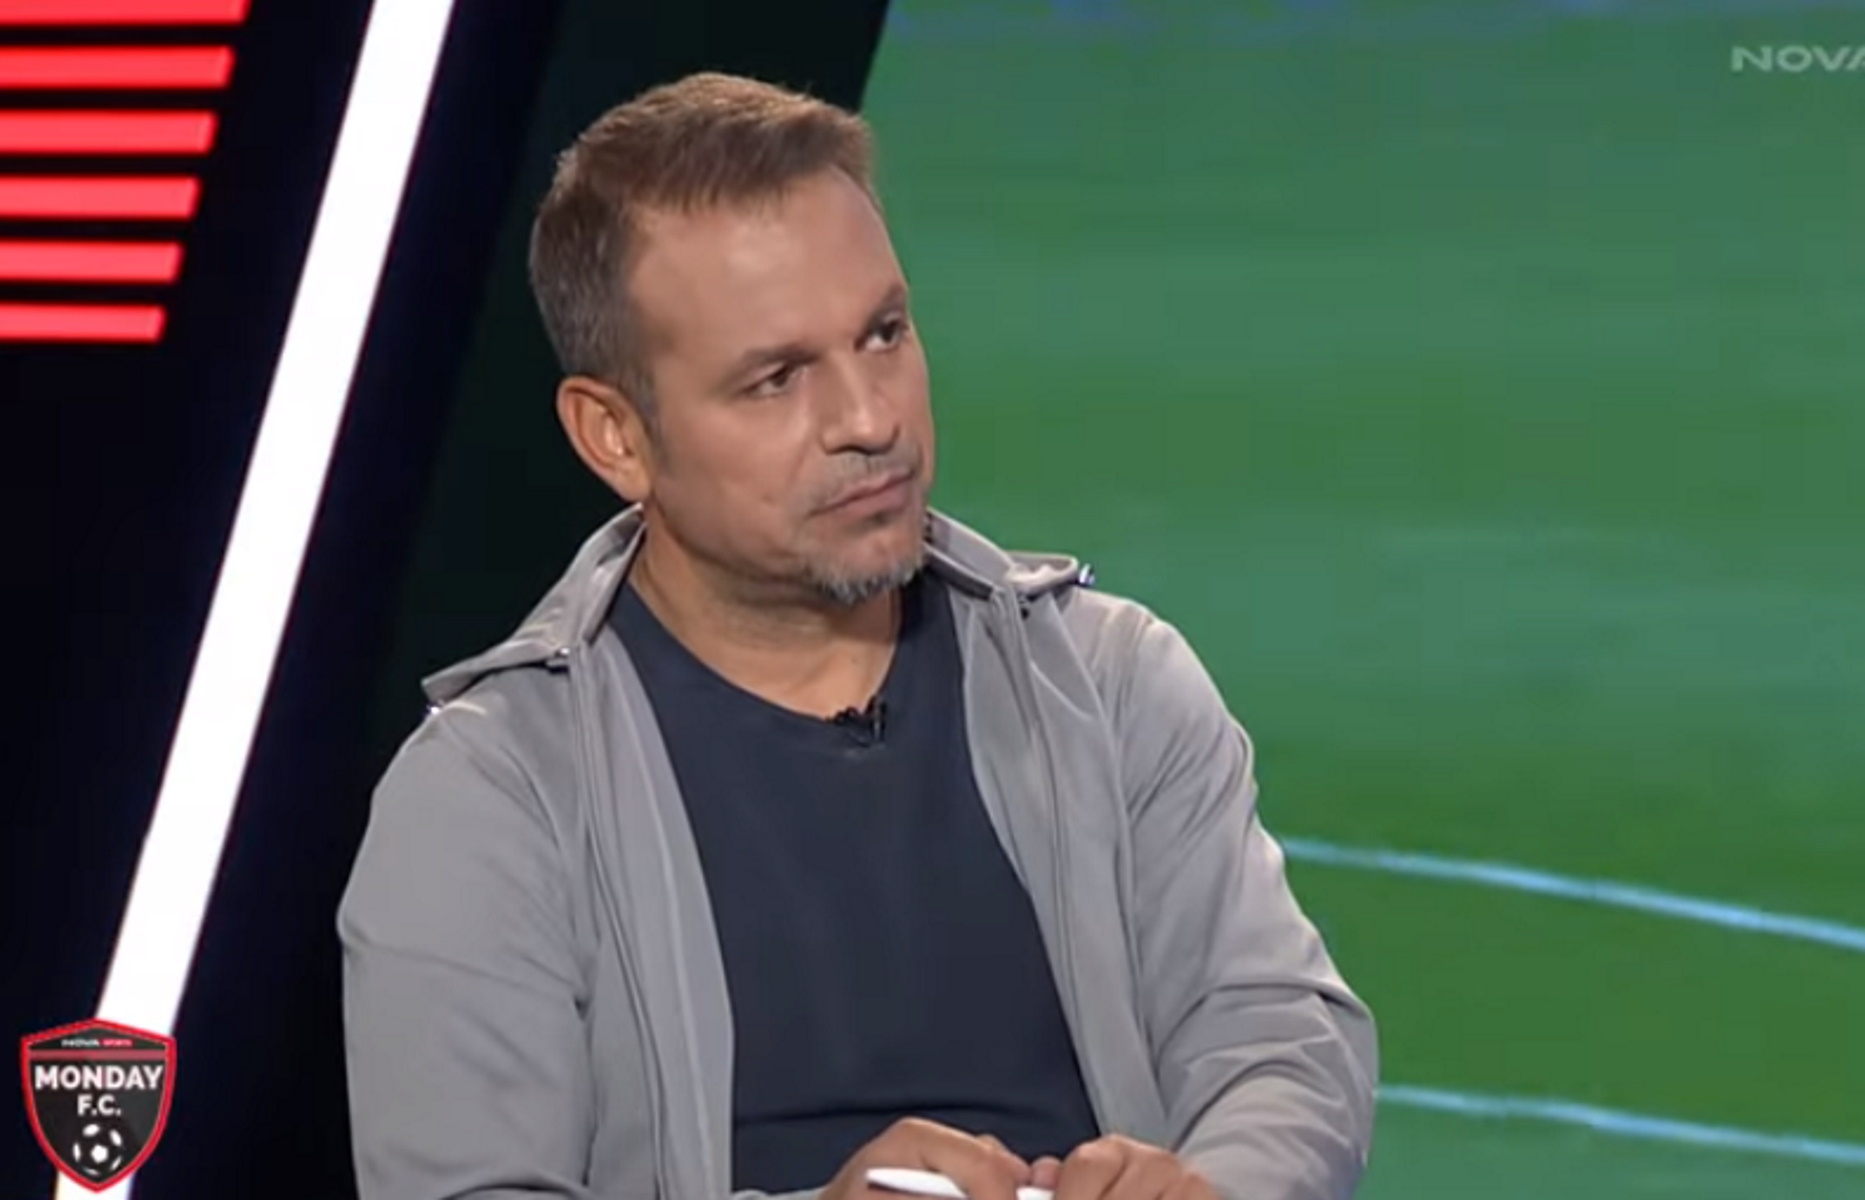 Ντέμης Νικολαΐδης: «Ο Γιοβάνοβιτς είχε στο μυαλό του να μη χάσει – Όπως πάει η ΑΕΚ θα βγάλει άχρηστο και τον Τσούμπερ»